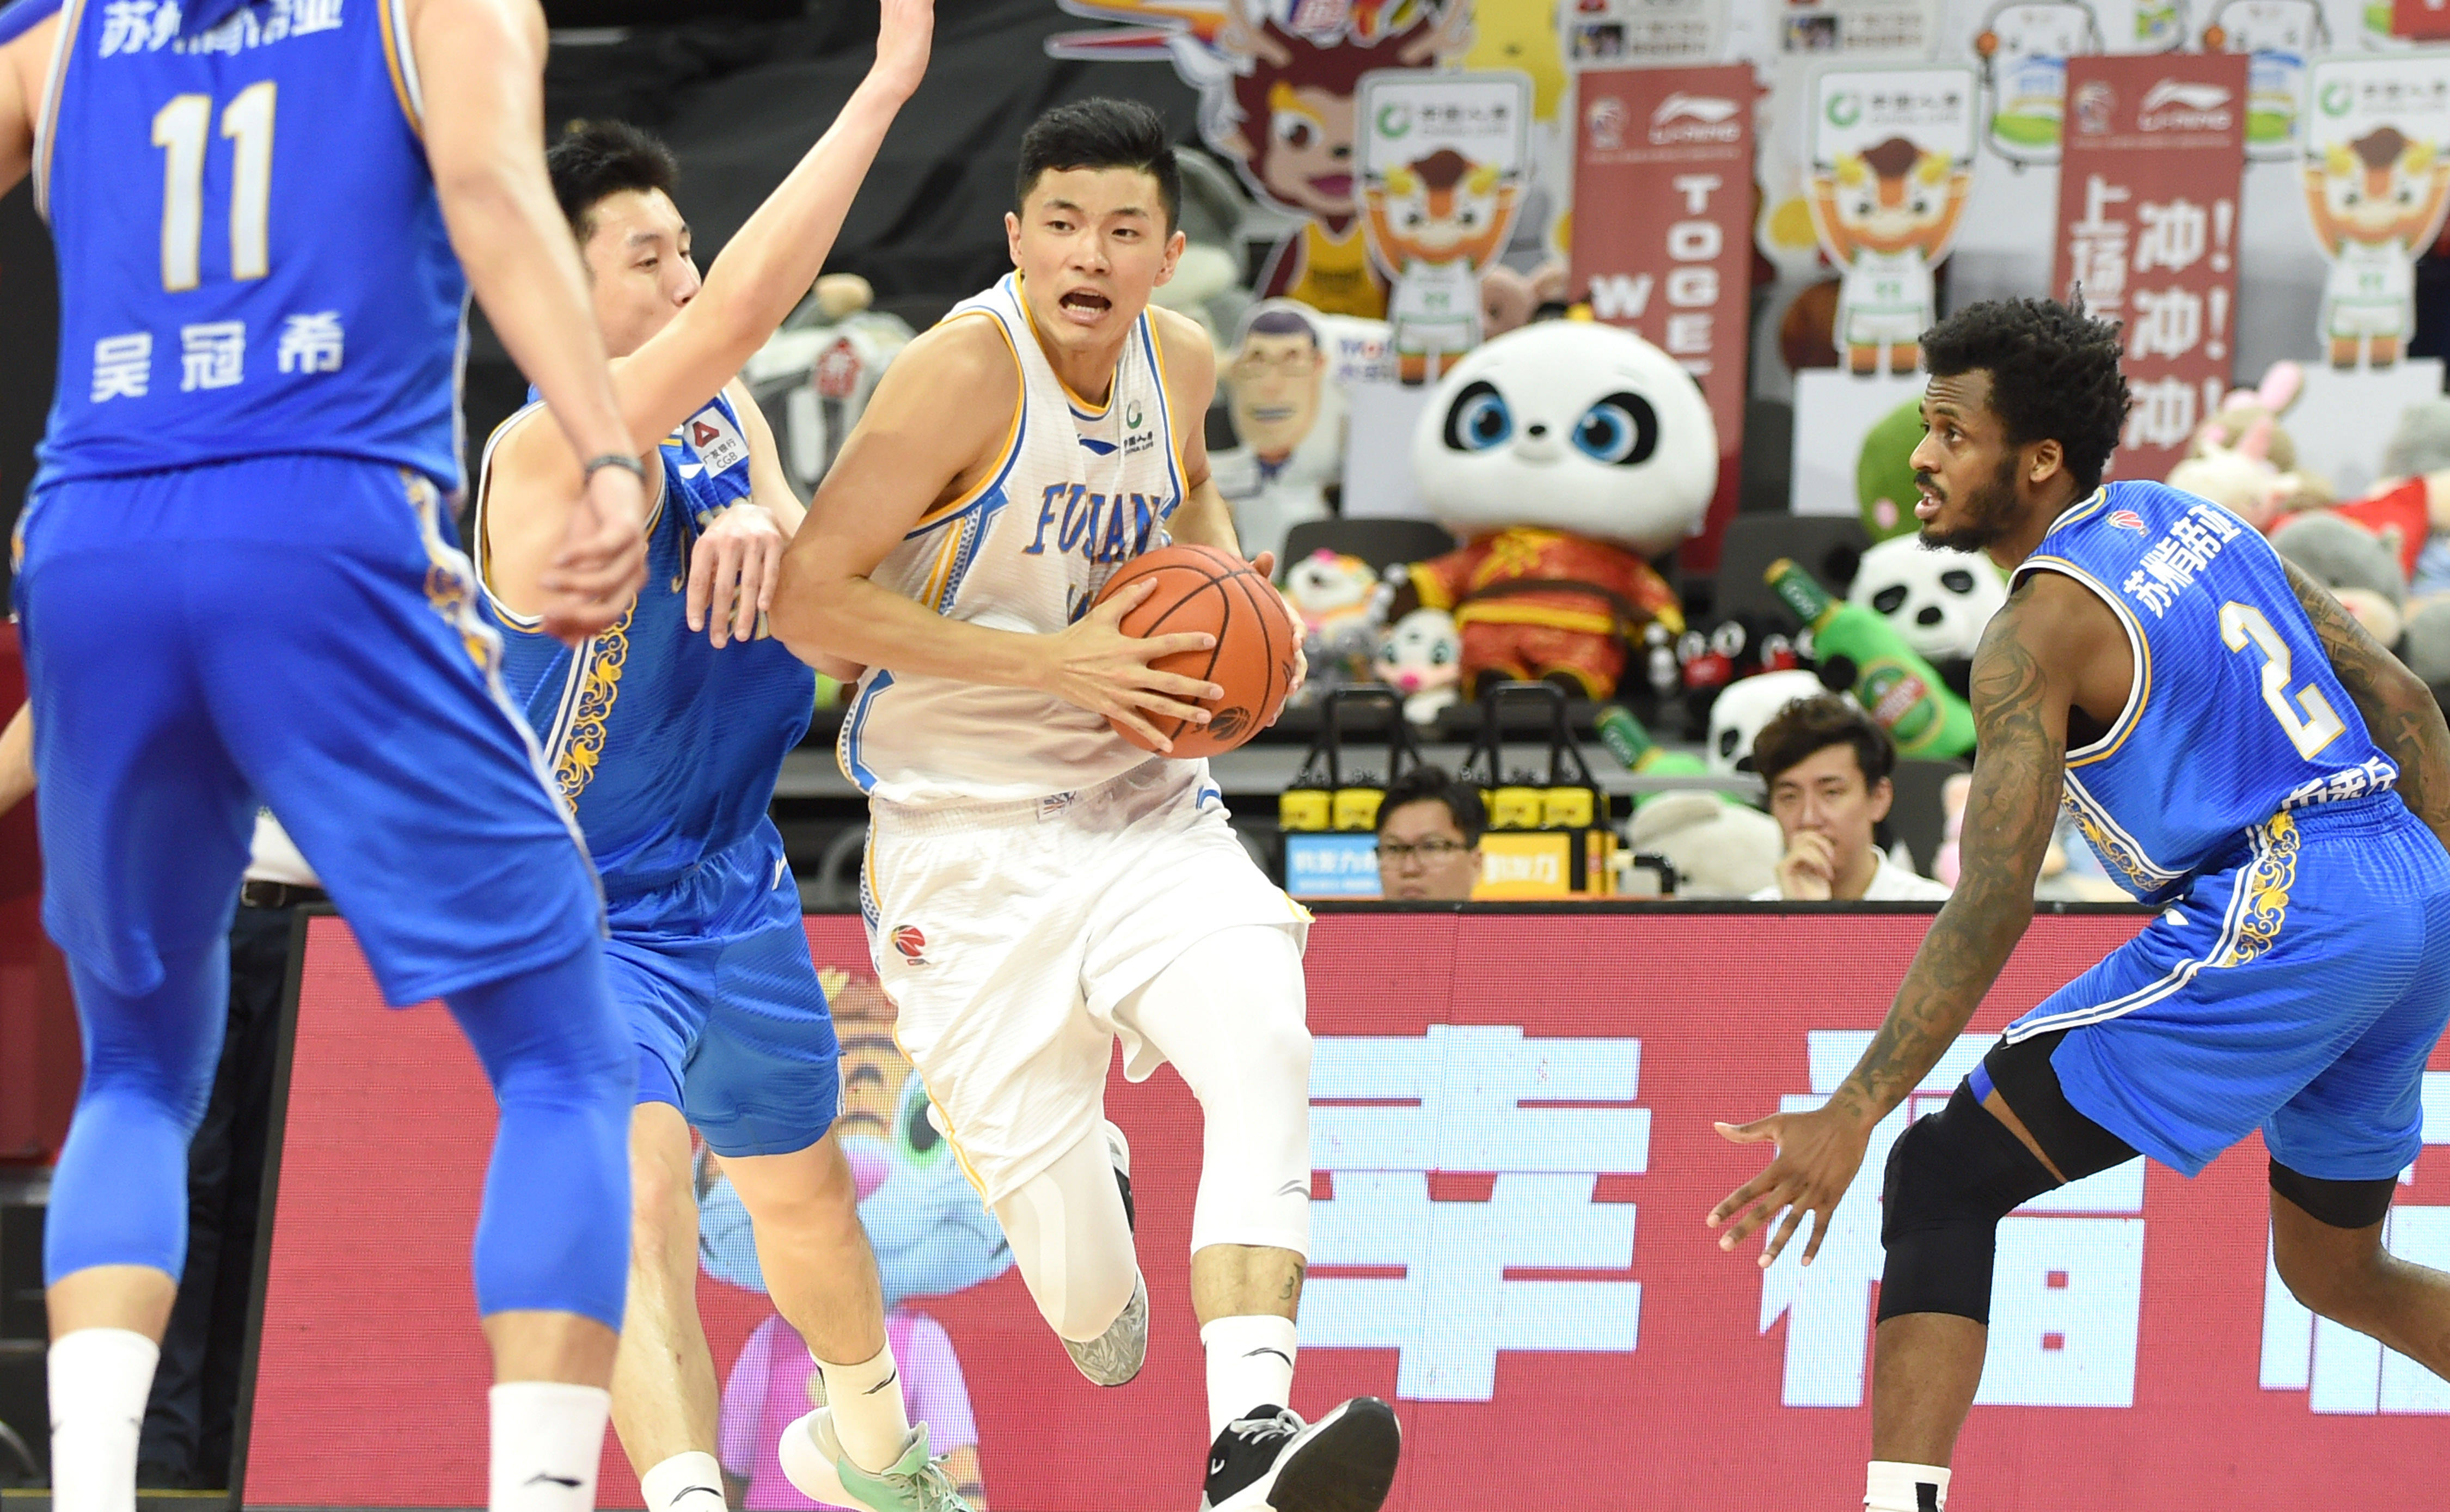 7月1日,福建豹发力队球员陈林坚(右二)在比赛中带球突破